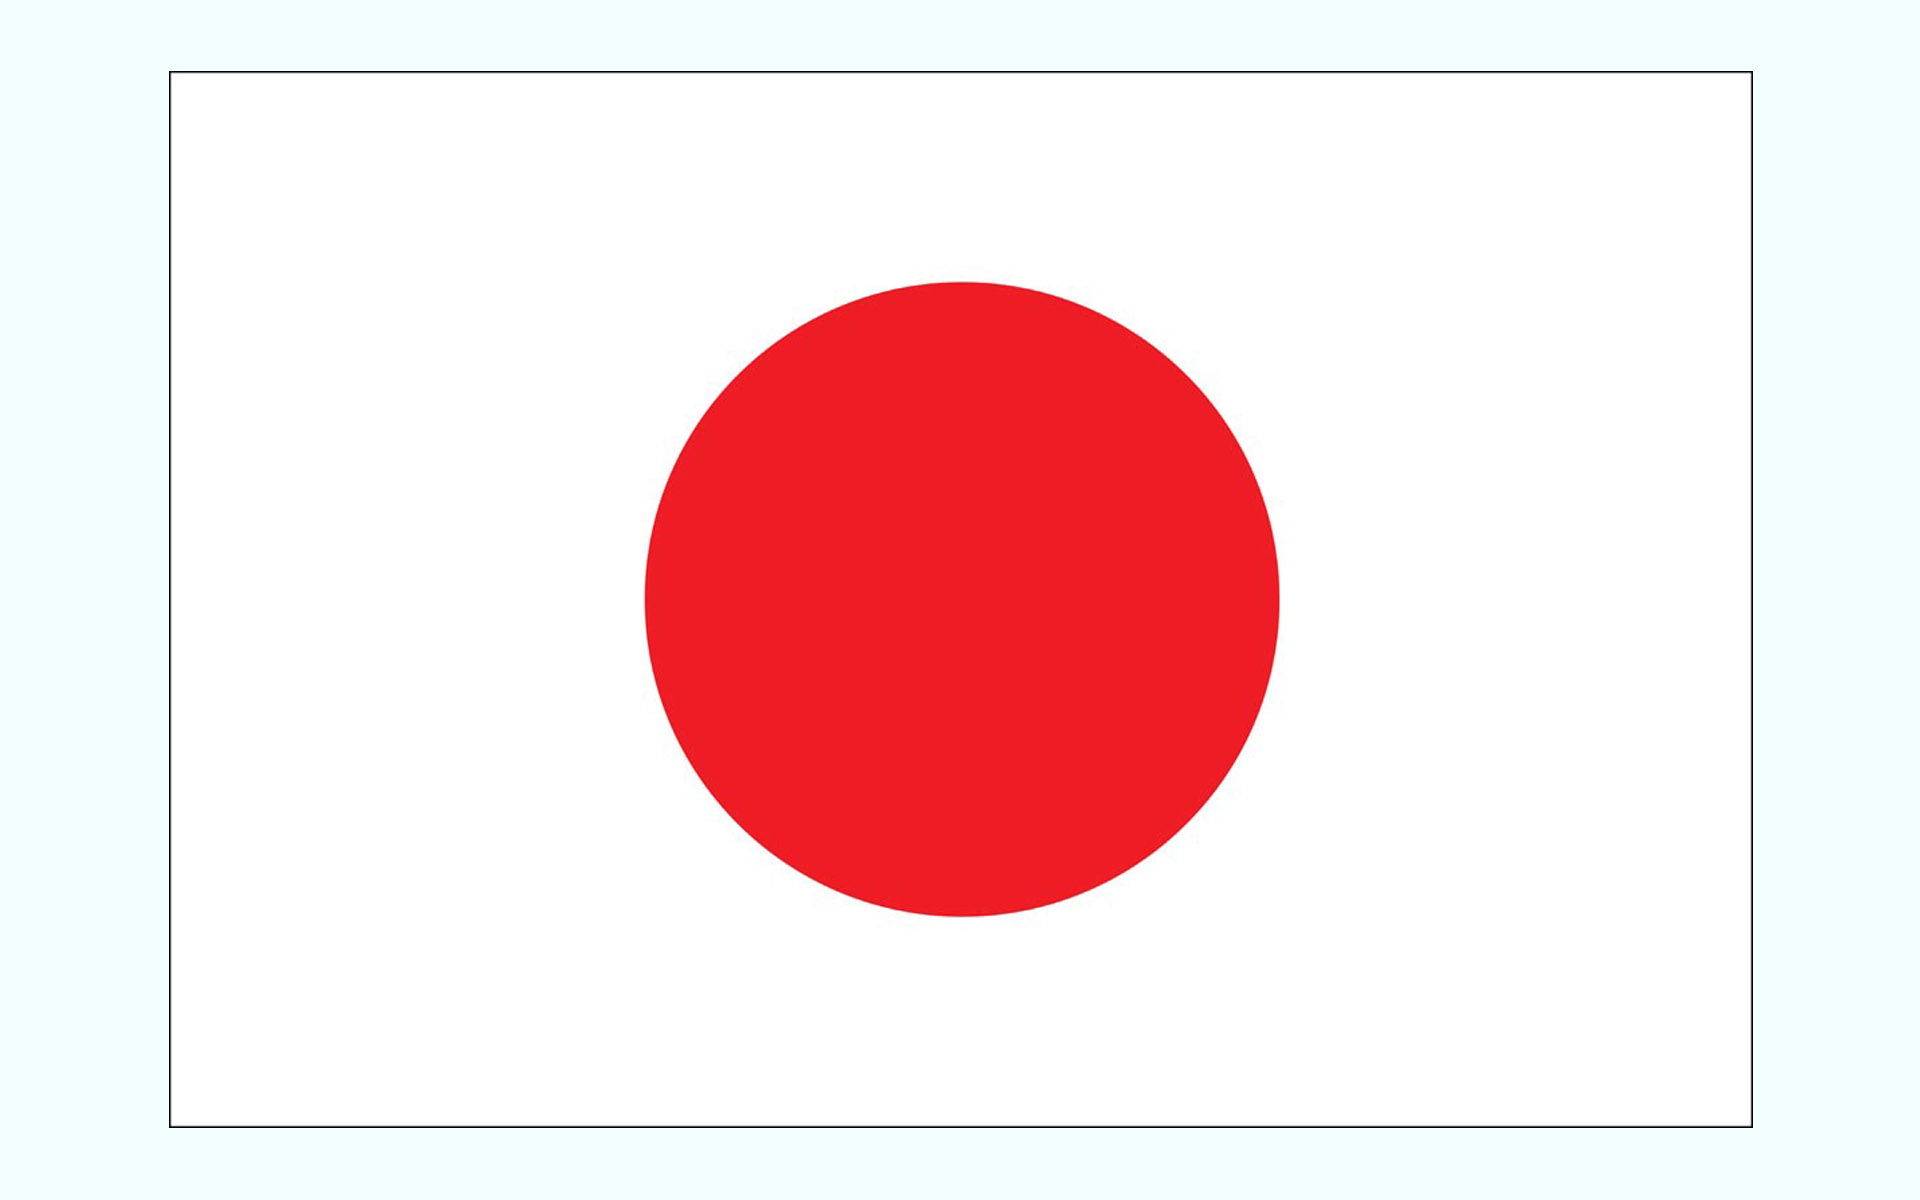 عکس پرچم کشور چین